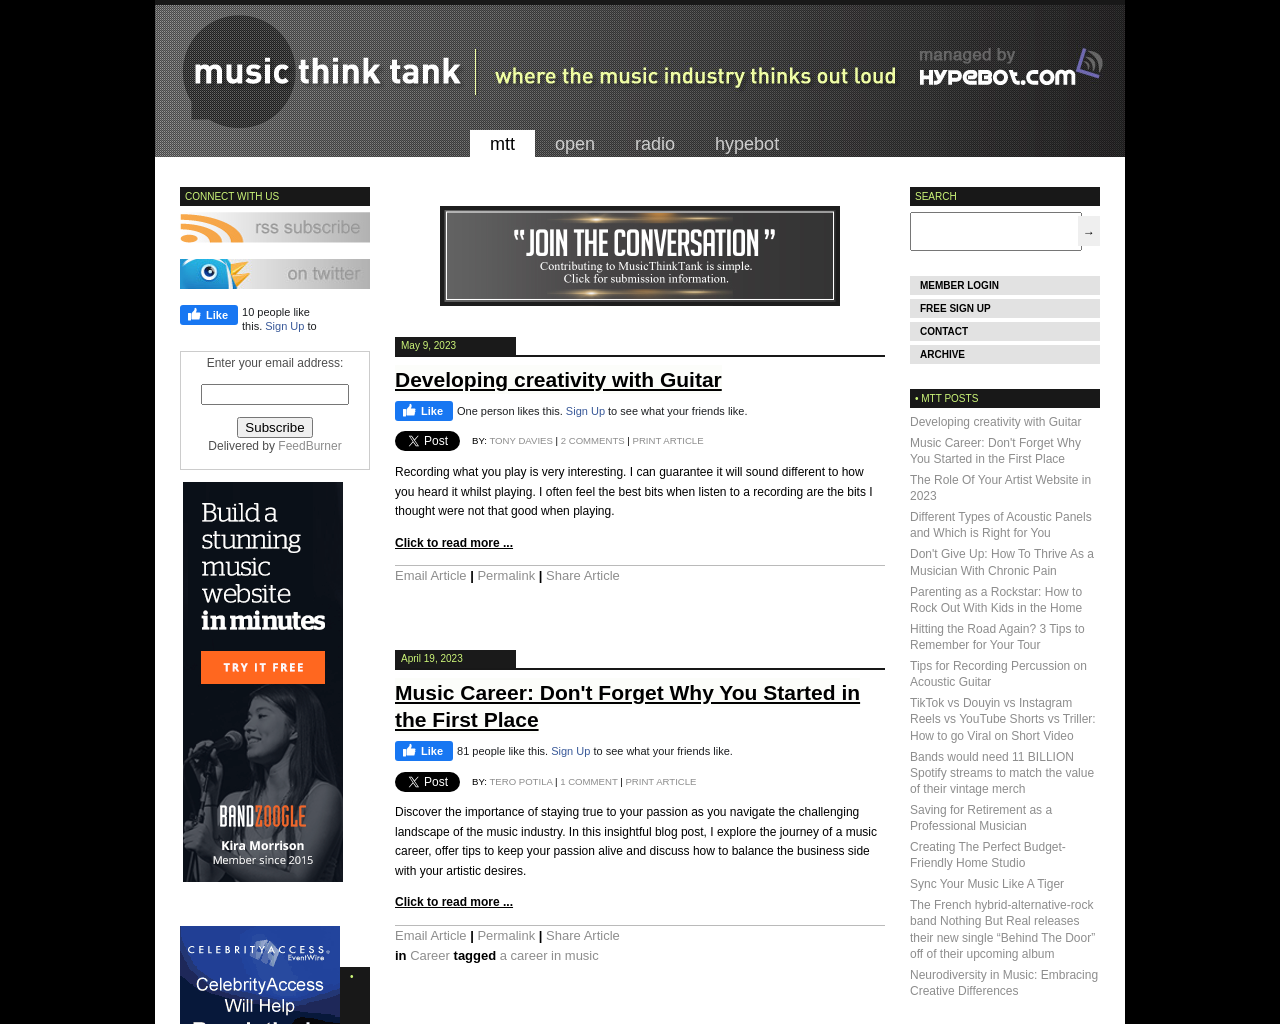 musicthinktank.com